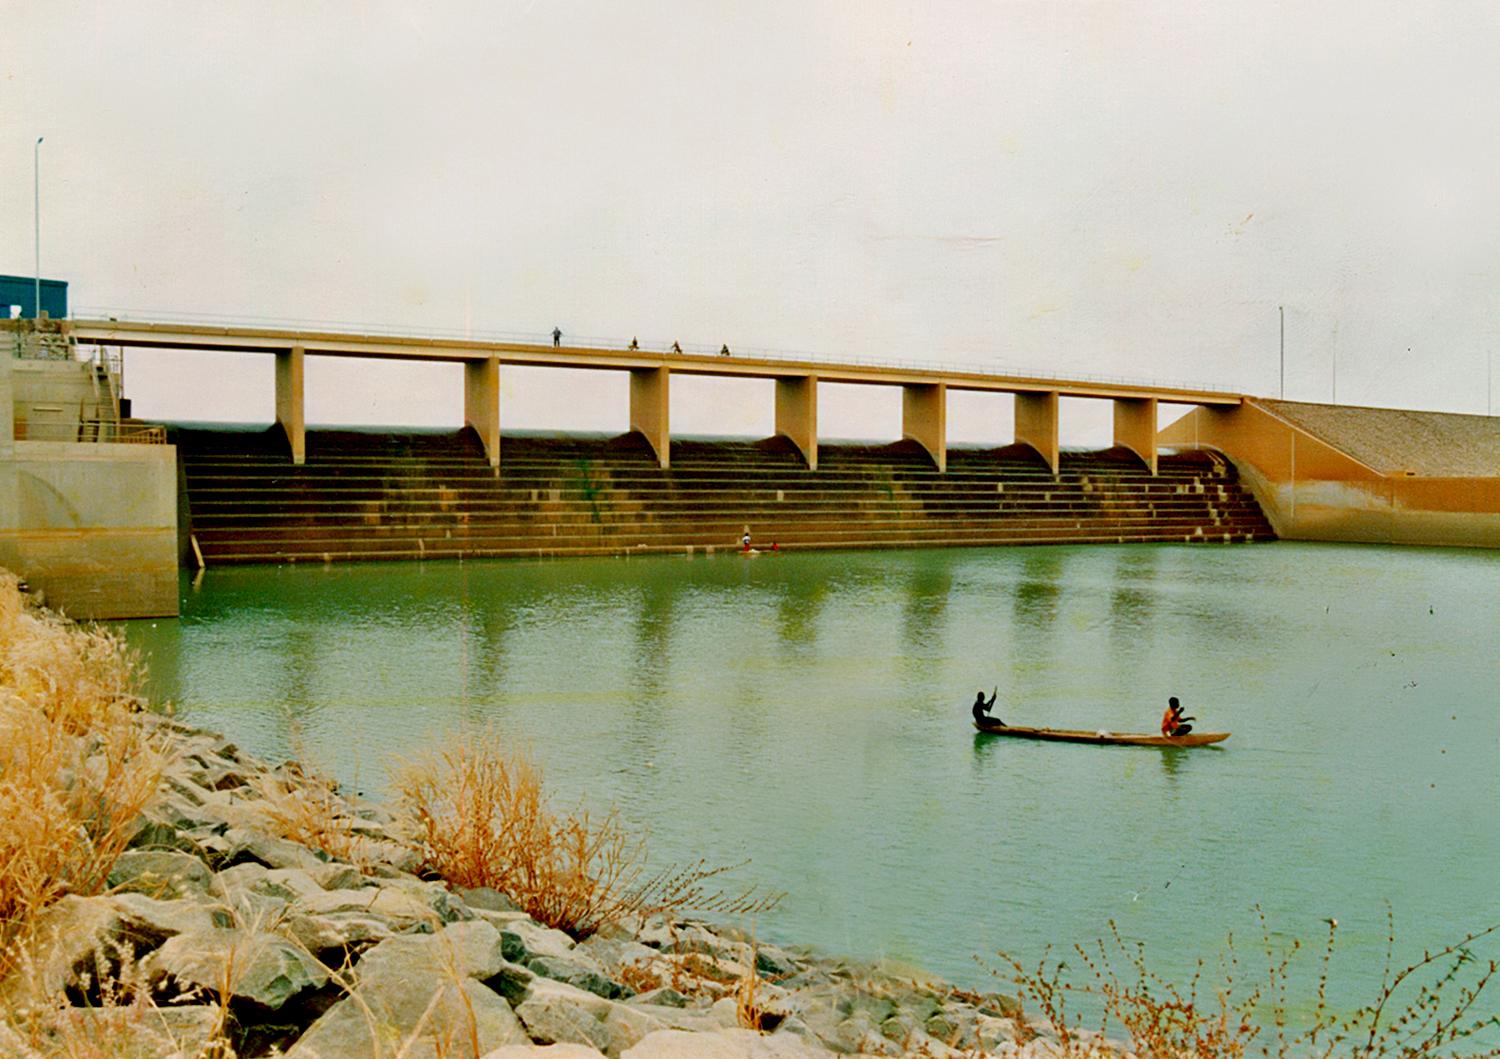 Le barrage de Ziga II a une capacité de 200 millions de mètres cubes et vient renforcer l’approvisionnement d’eau de la ville de Ouagadougou. Crédit photo ONEA